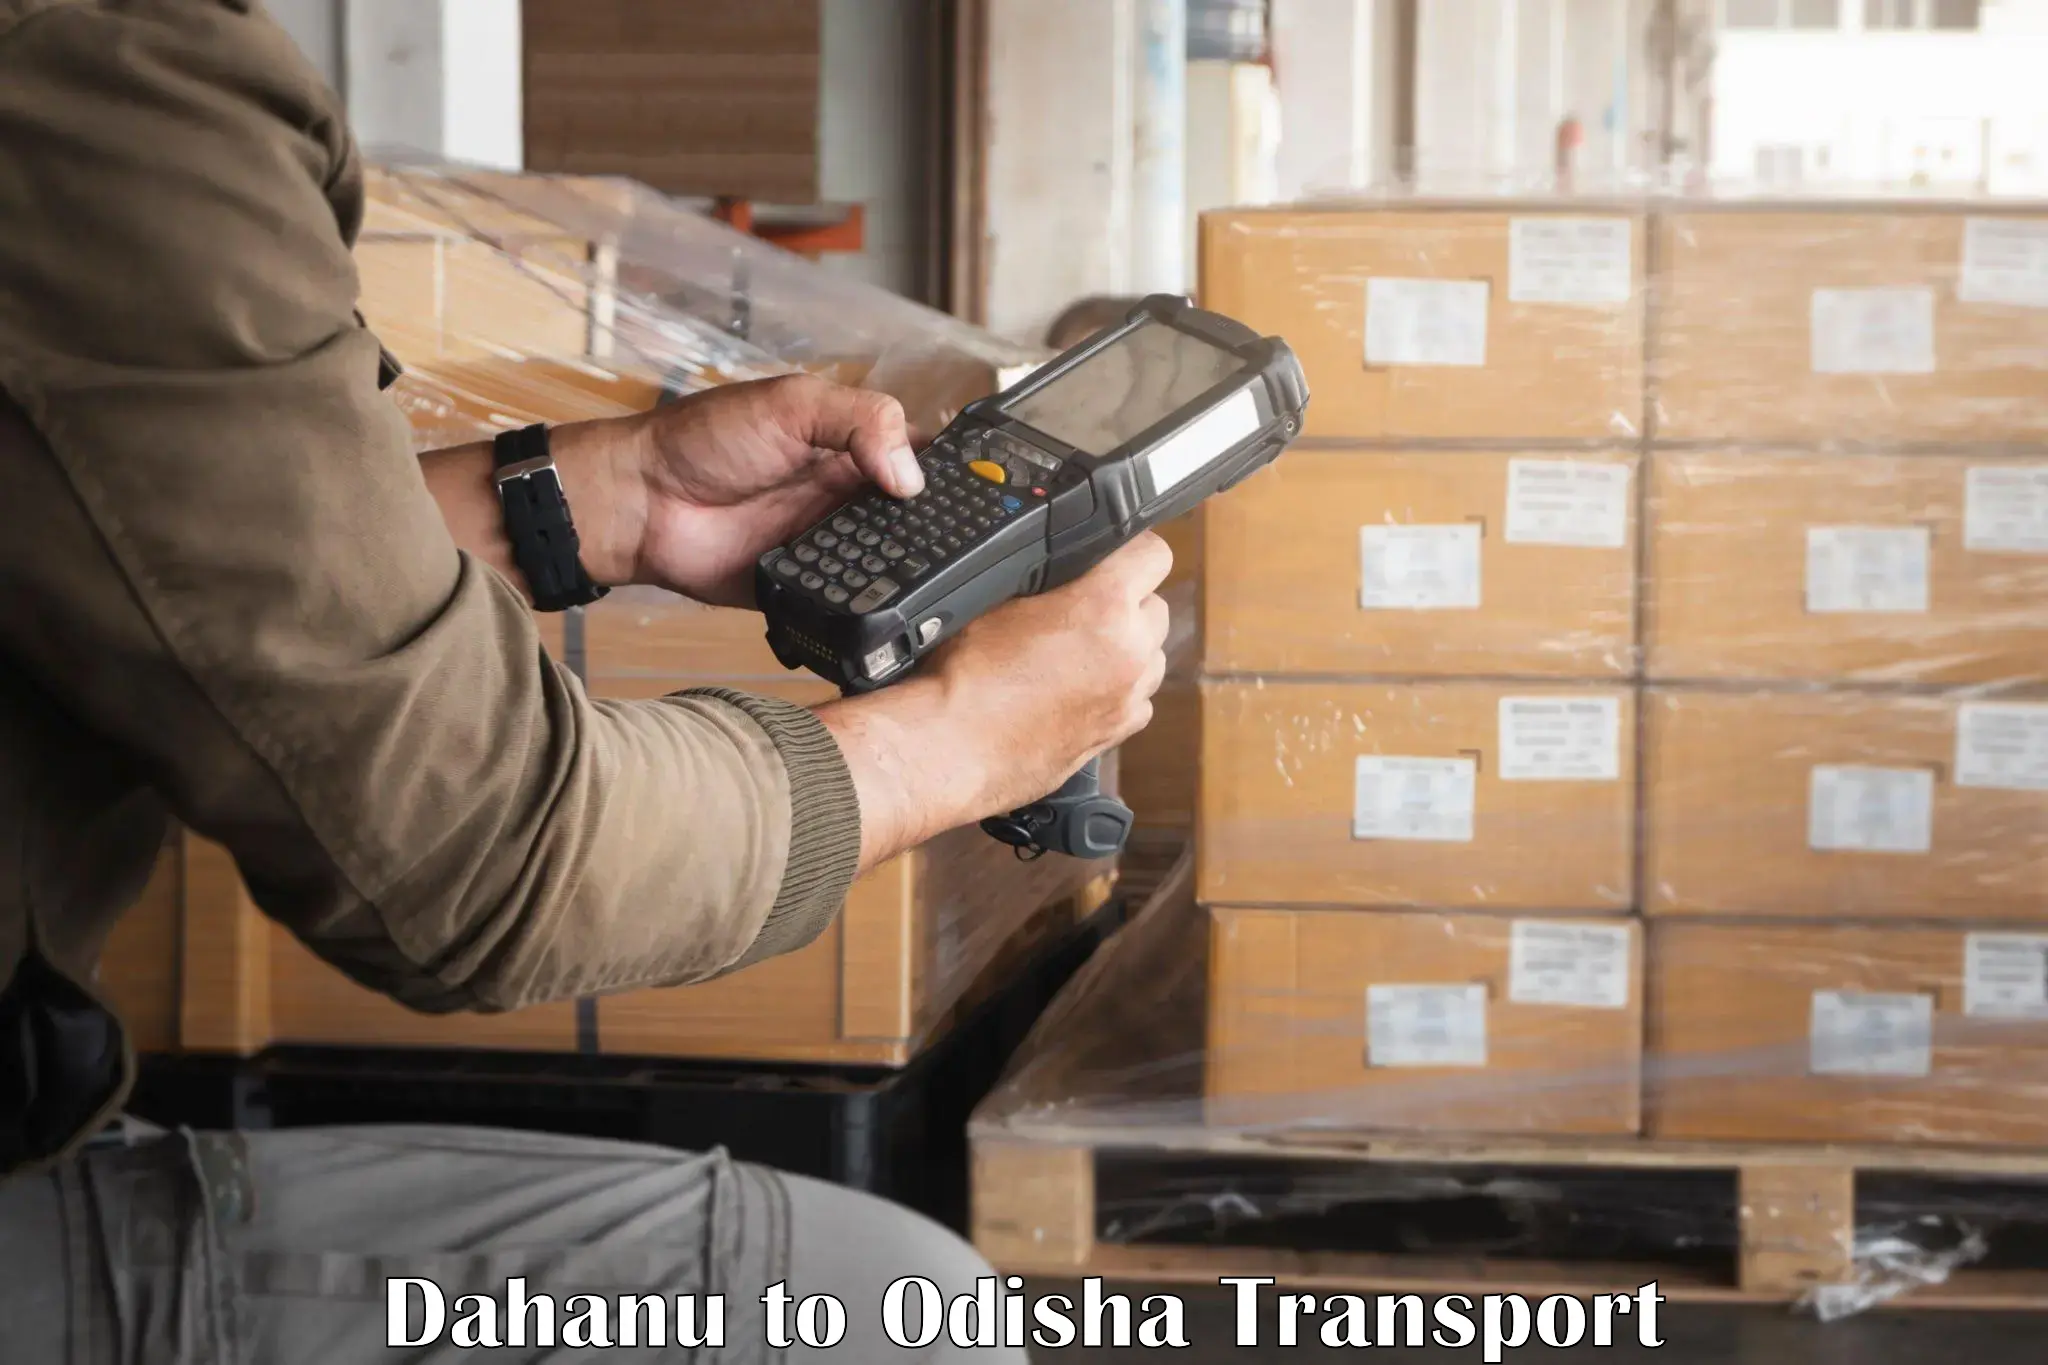 India truck logistics services Dahanu to Raighar